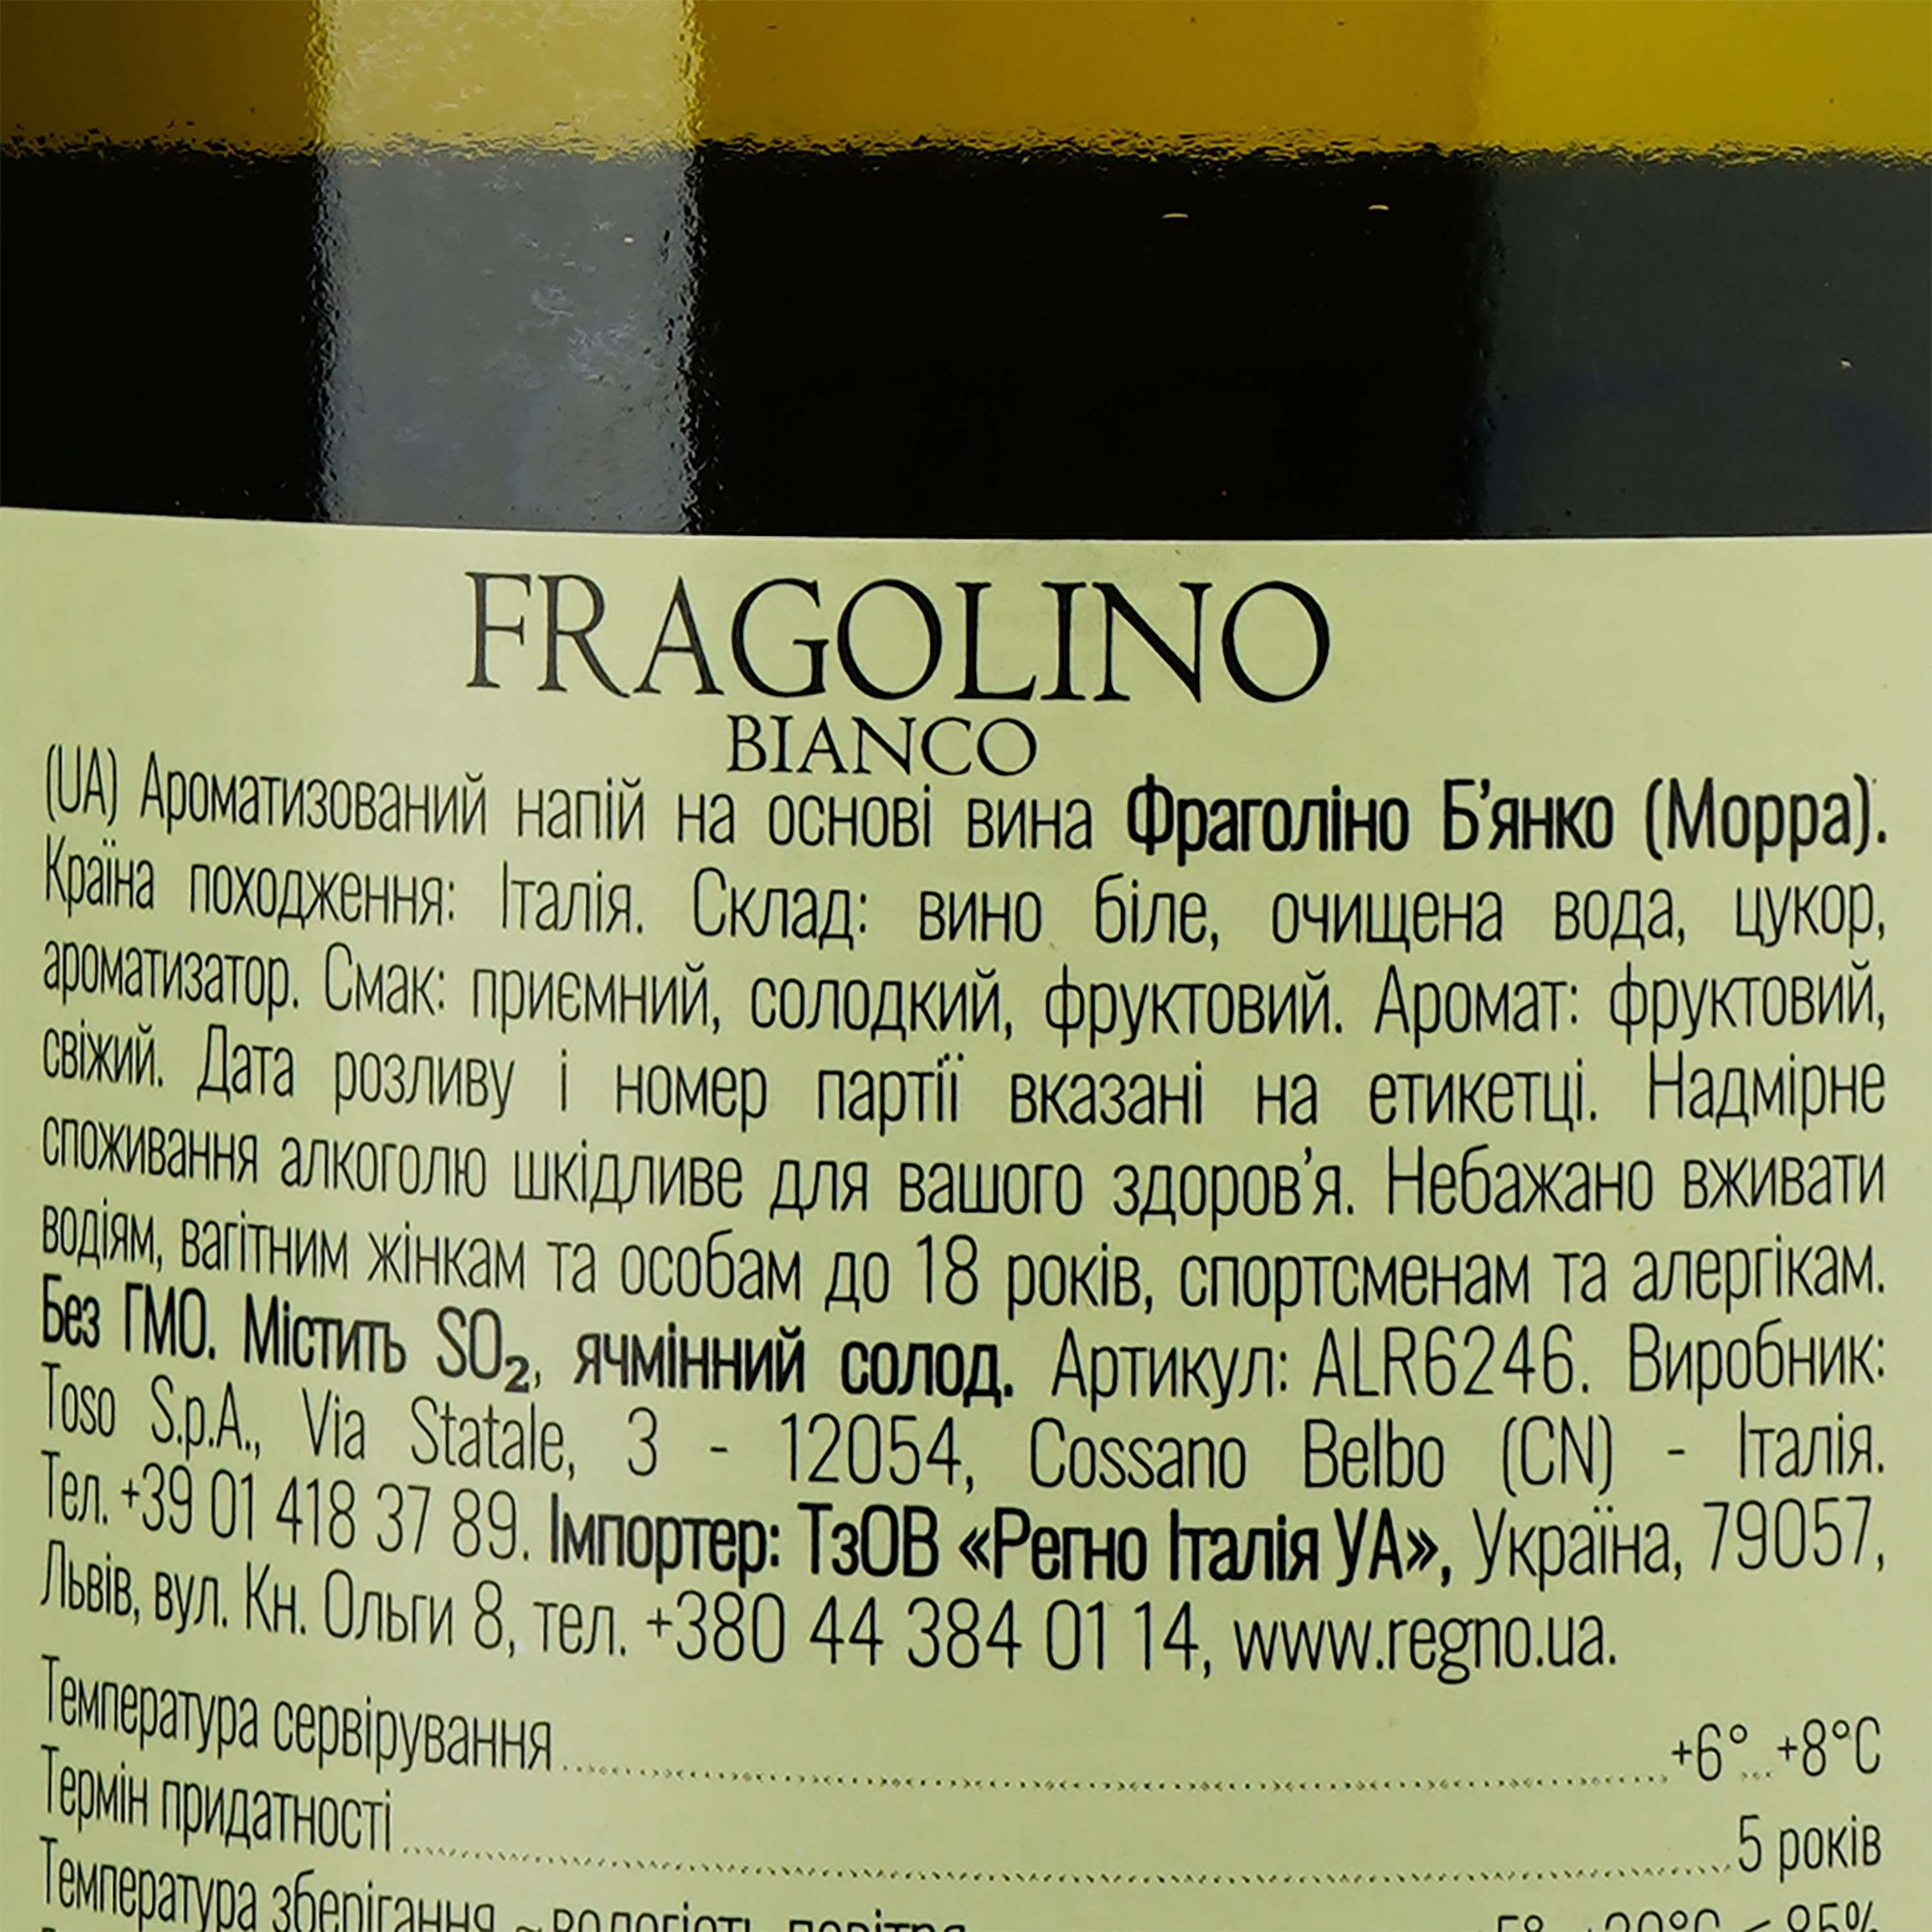 Фраголино Morra Fragolino Bianco, белое, сладкое, 0,75 л - фото 3